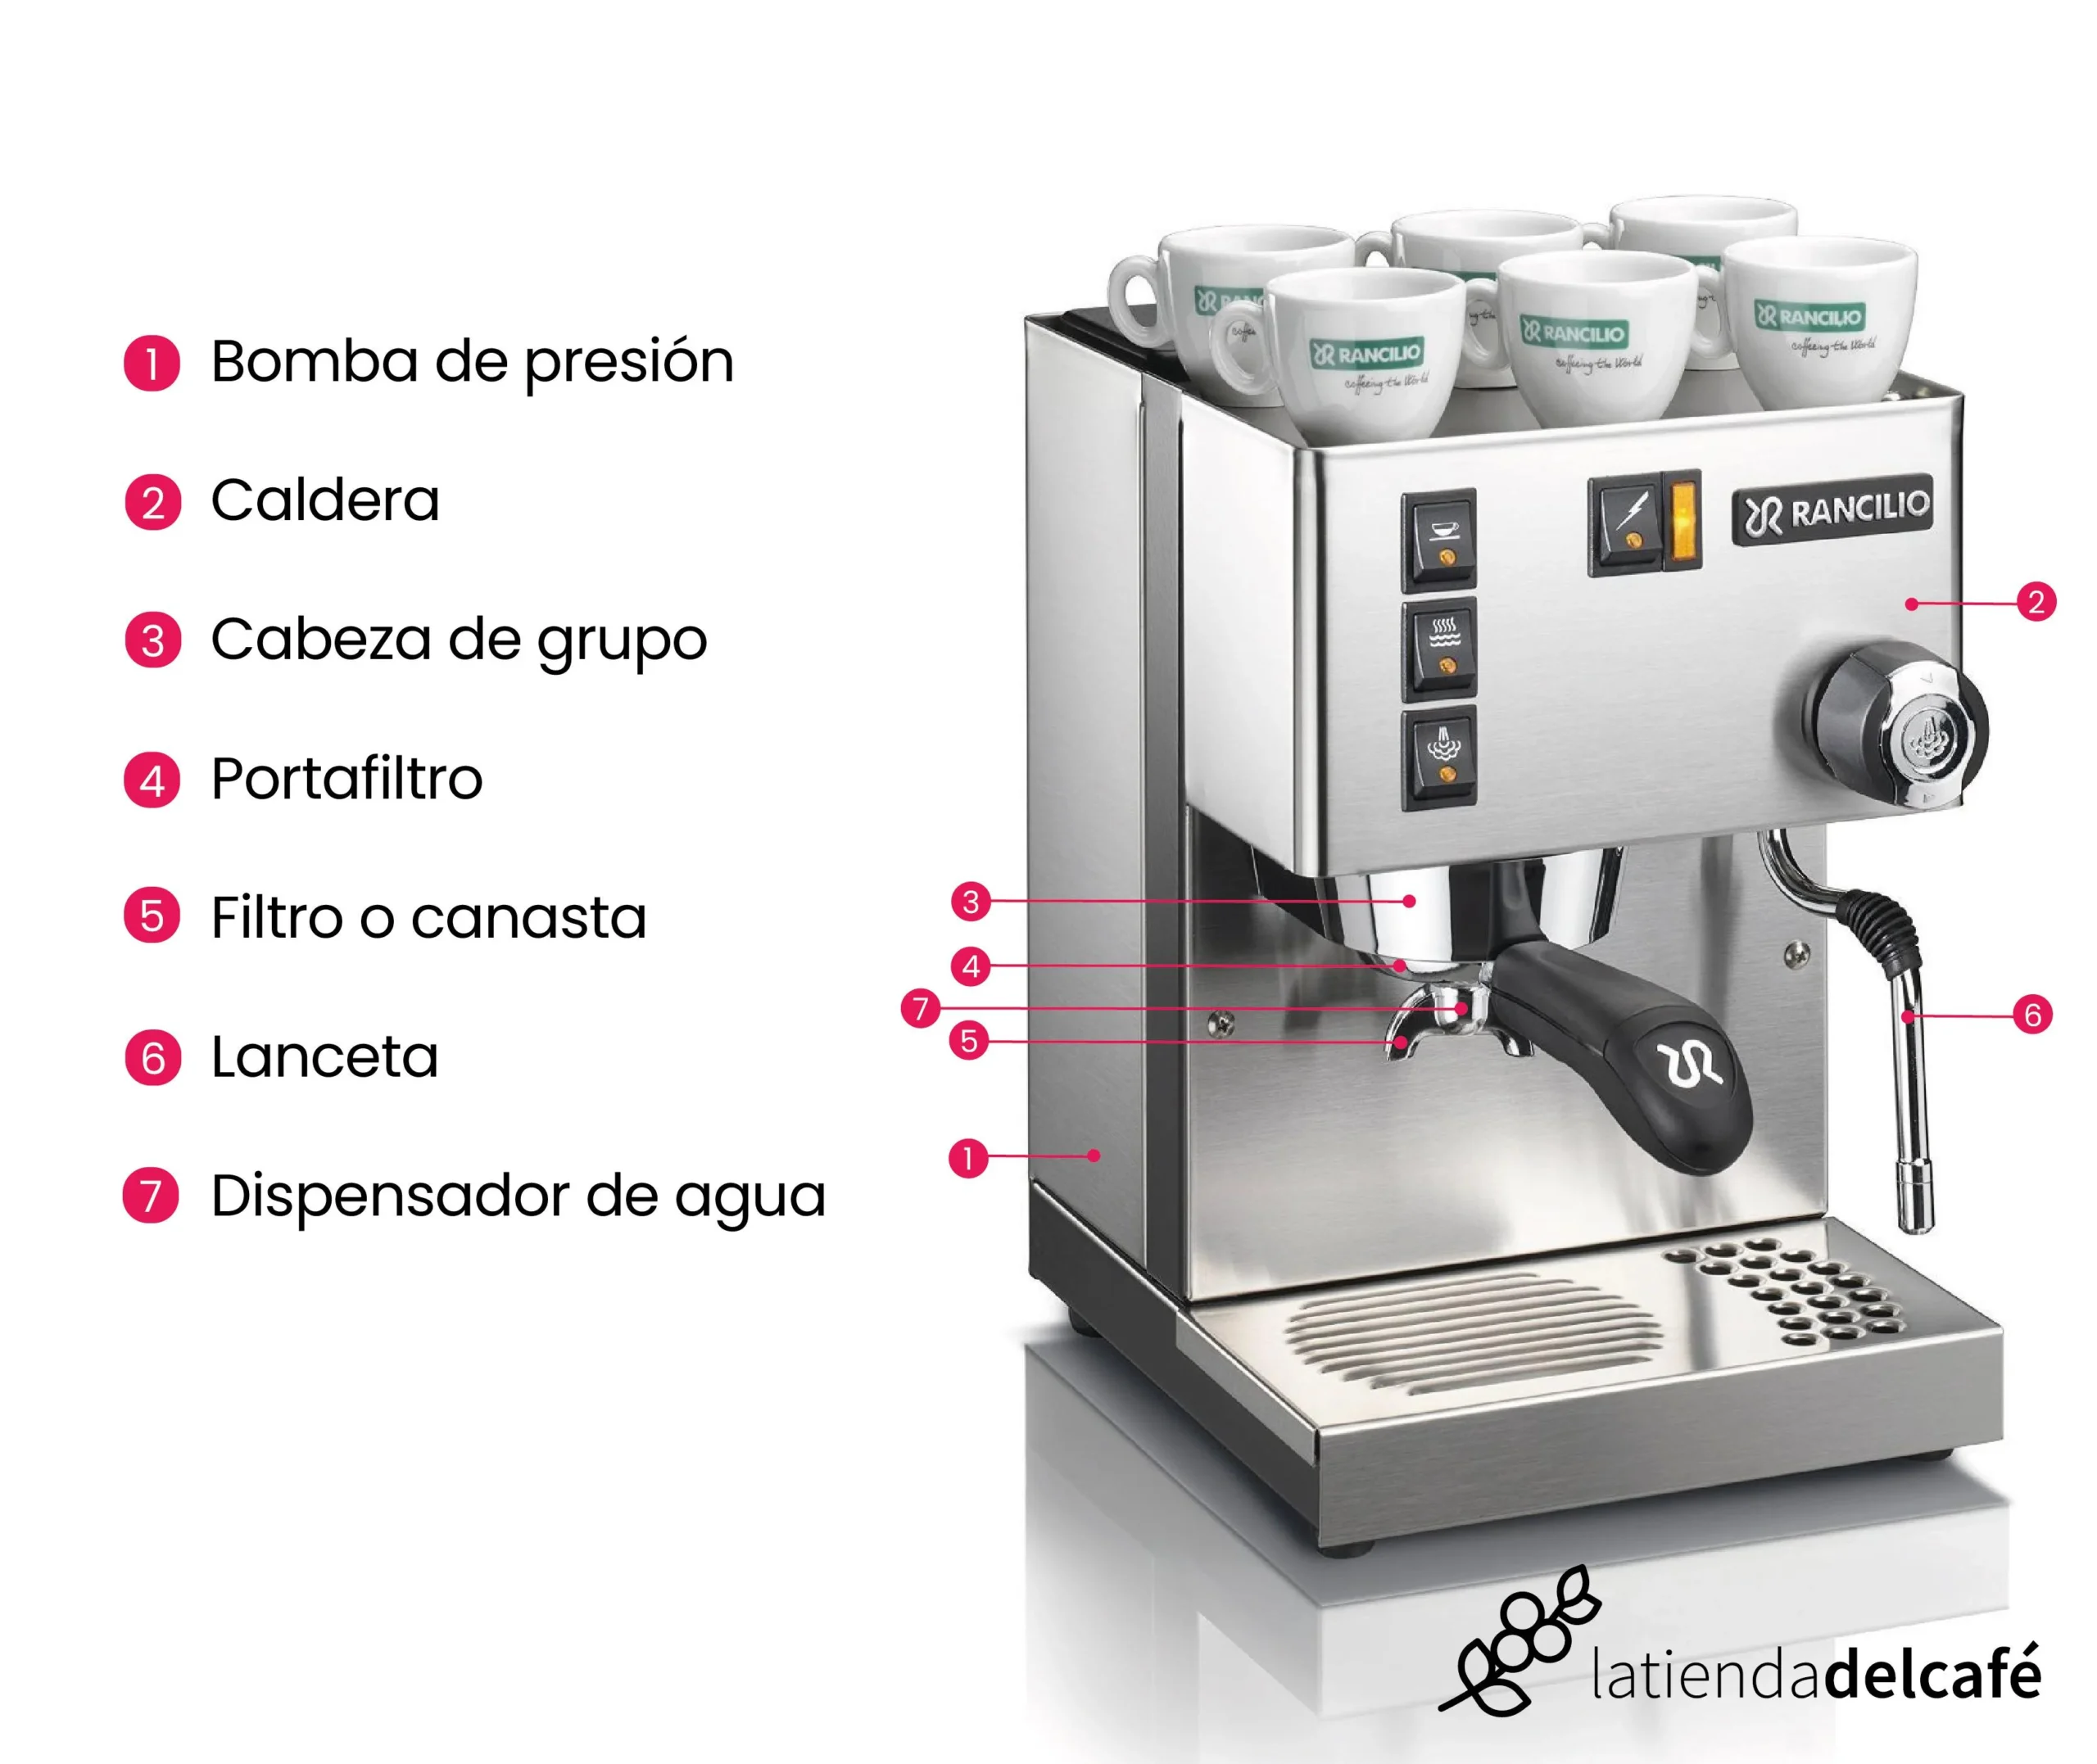 maquina de cafe espresso como funciona - Qué hace una cafetera de espresso